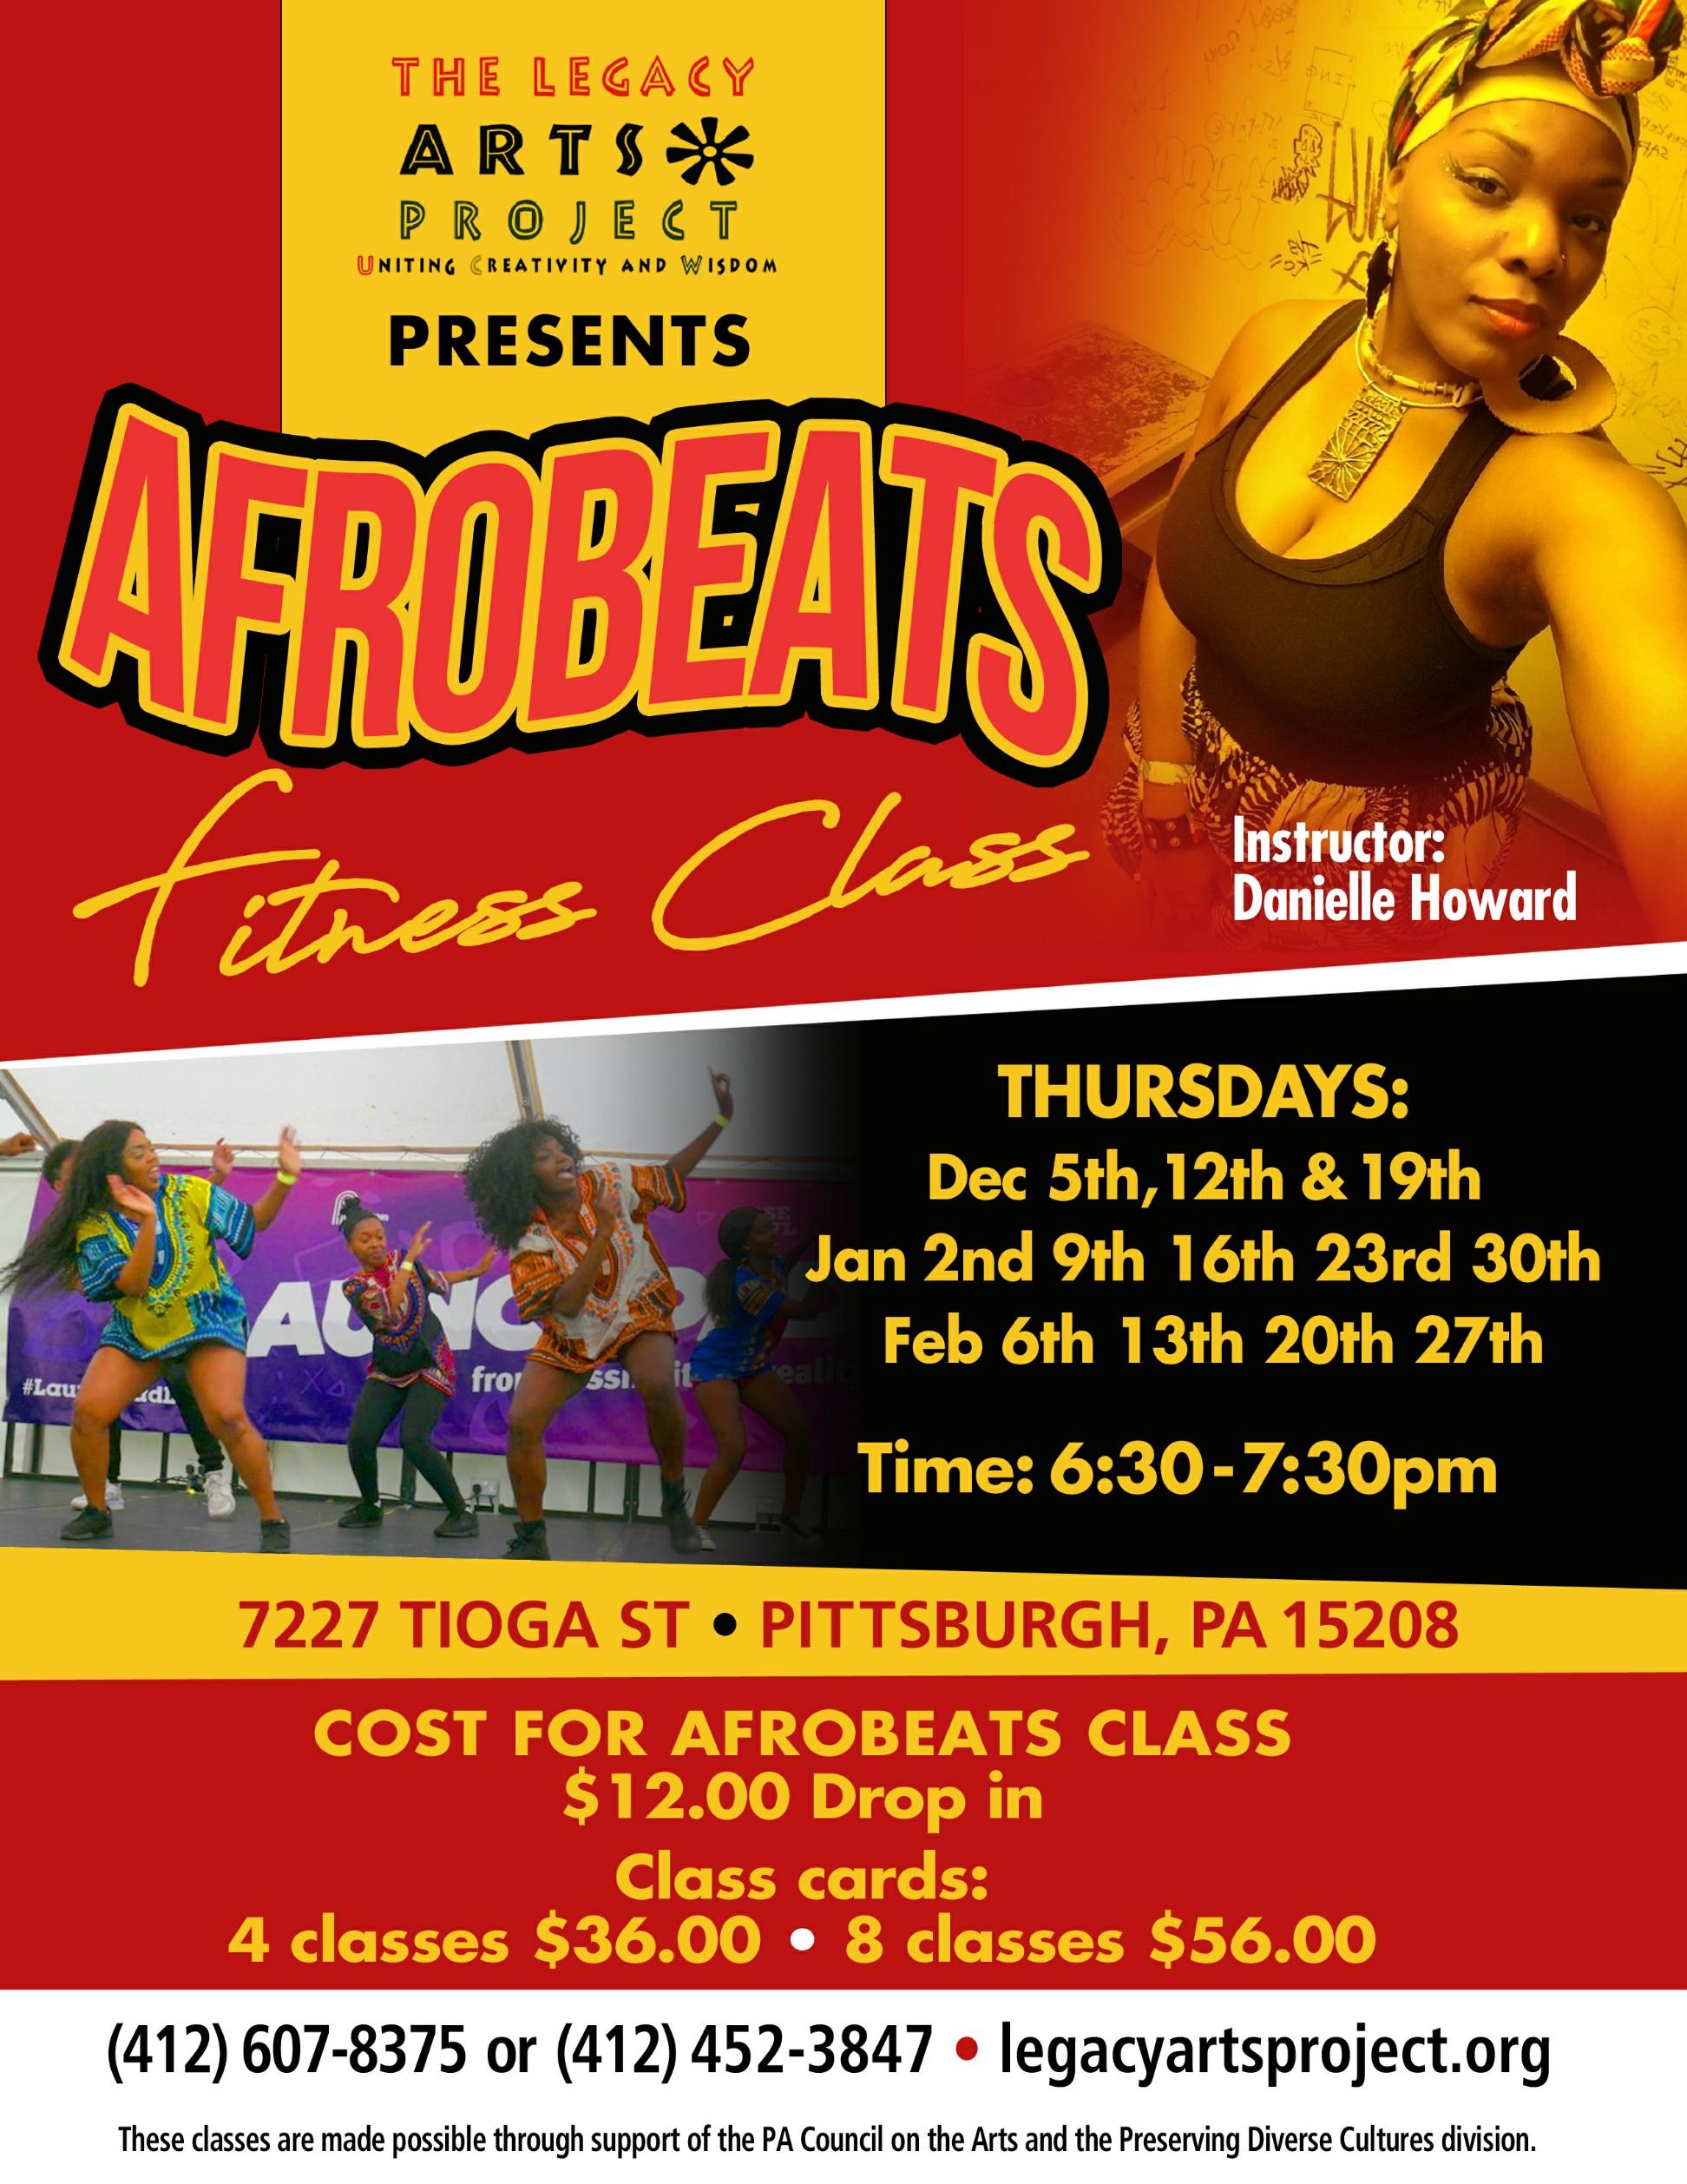 Afrobeats: Fitness Class